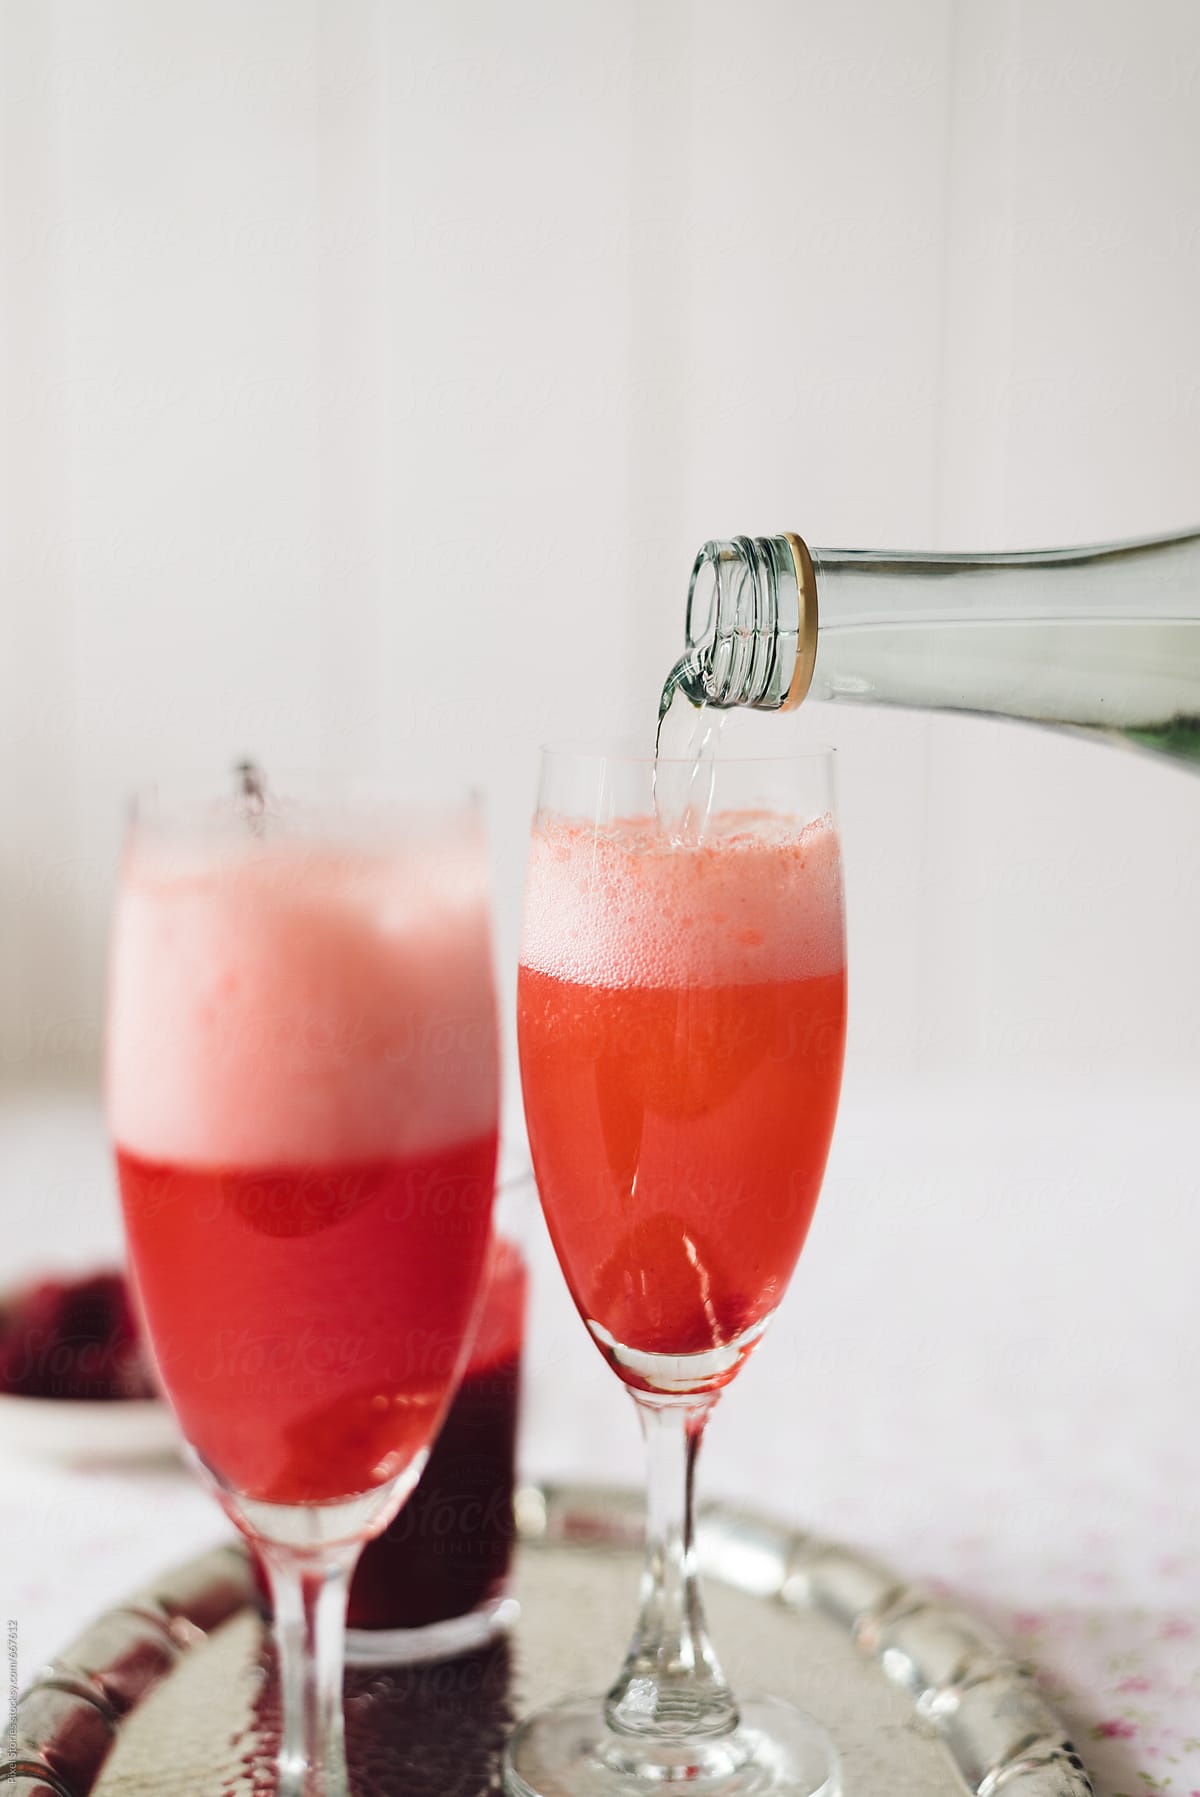 Making raspberry bellini prosecco cocktail